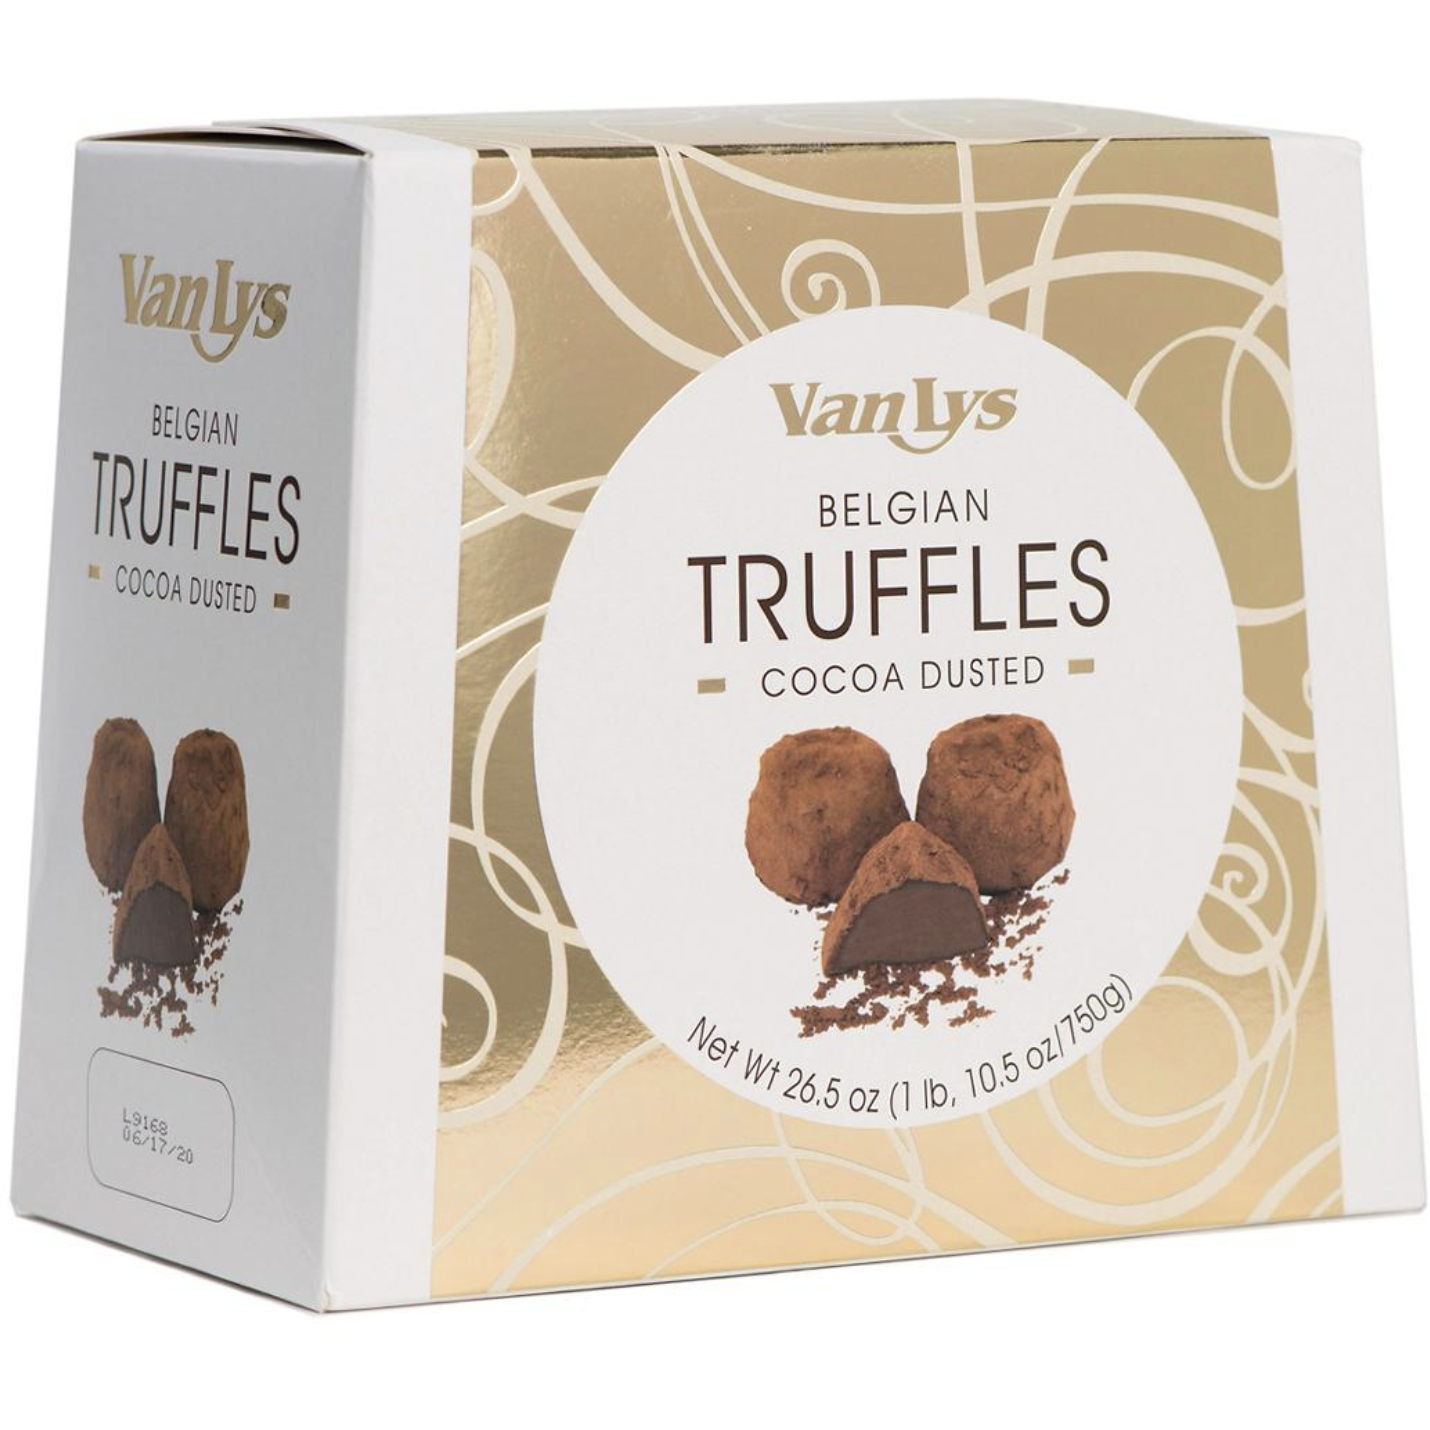 Van Lys Dusted Truffles, 700g, 24.7 oz.